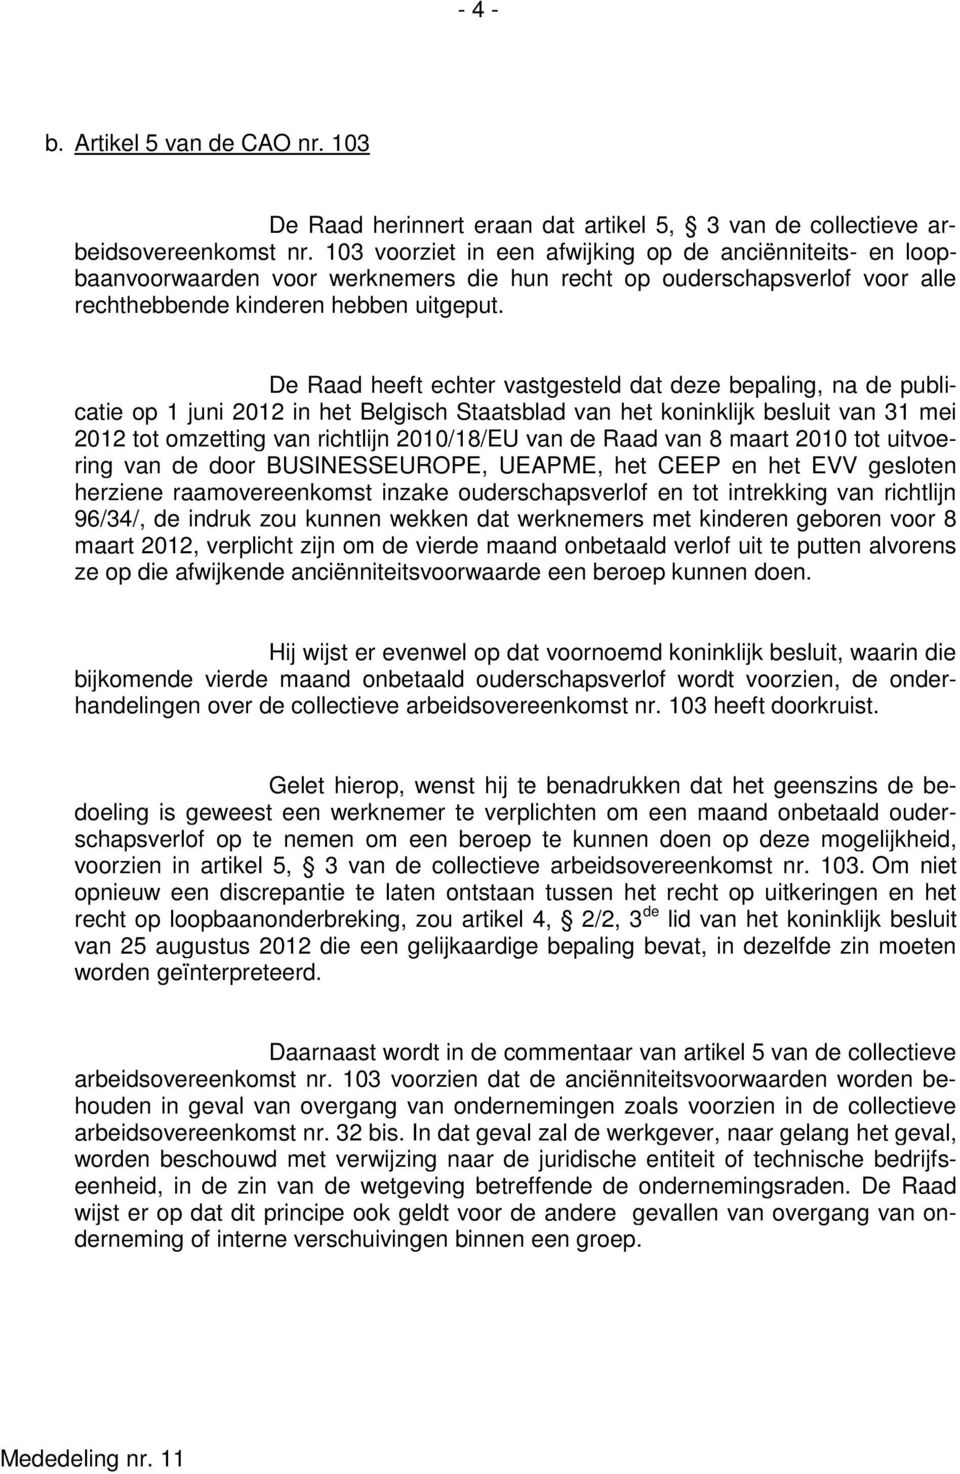 De Raad heeft echter vastgesteld dat deze bepaling, na de publicatie op 1 juni 2012 in het Belgisch Staatsblad van het koninklijk besluit van 31 mei 2012 tot omzetting van richtlijn 2010/18/EU van de